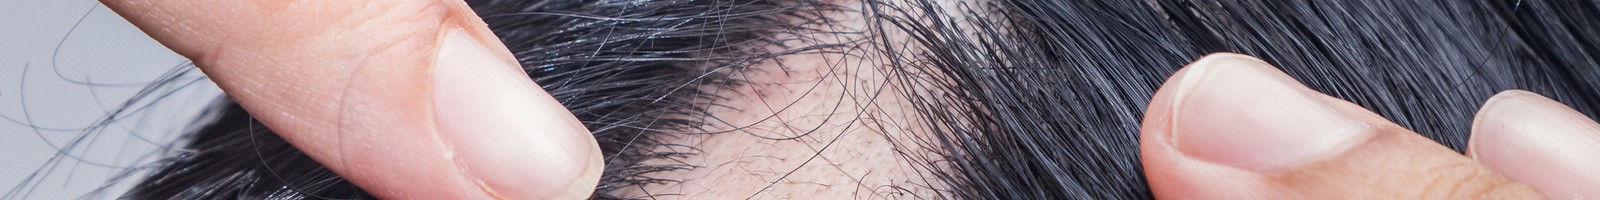 La culture de cheveux en laboratoire : un espoir pour ceux qui souffrent d’alopécie